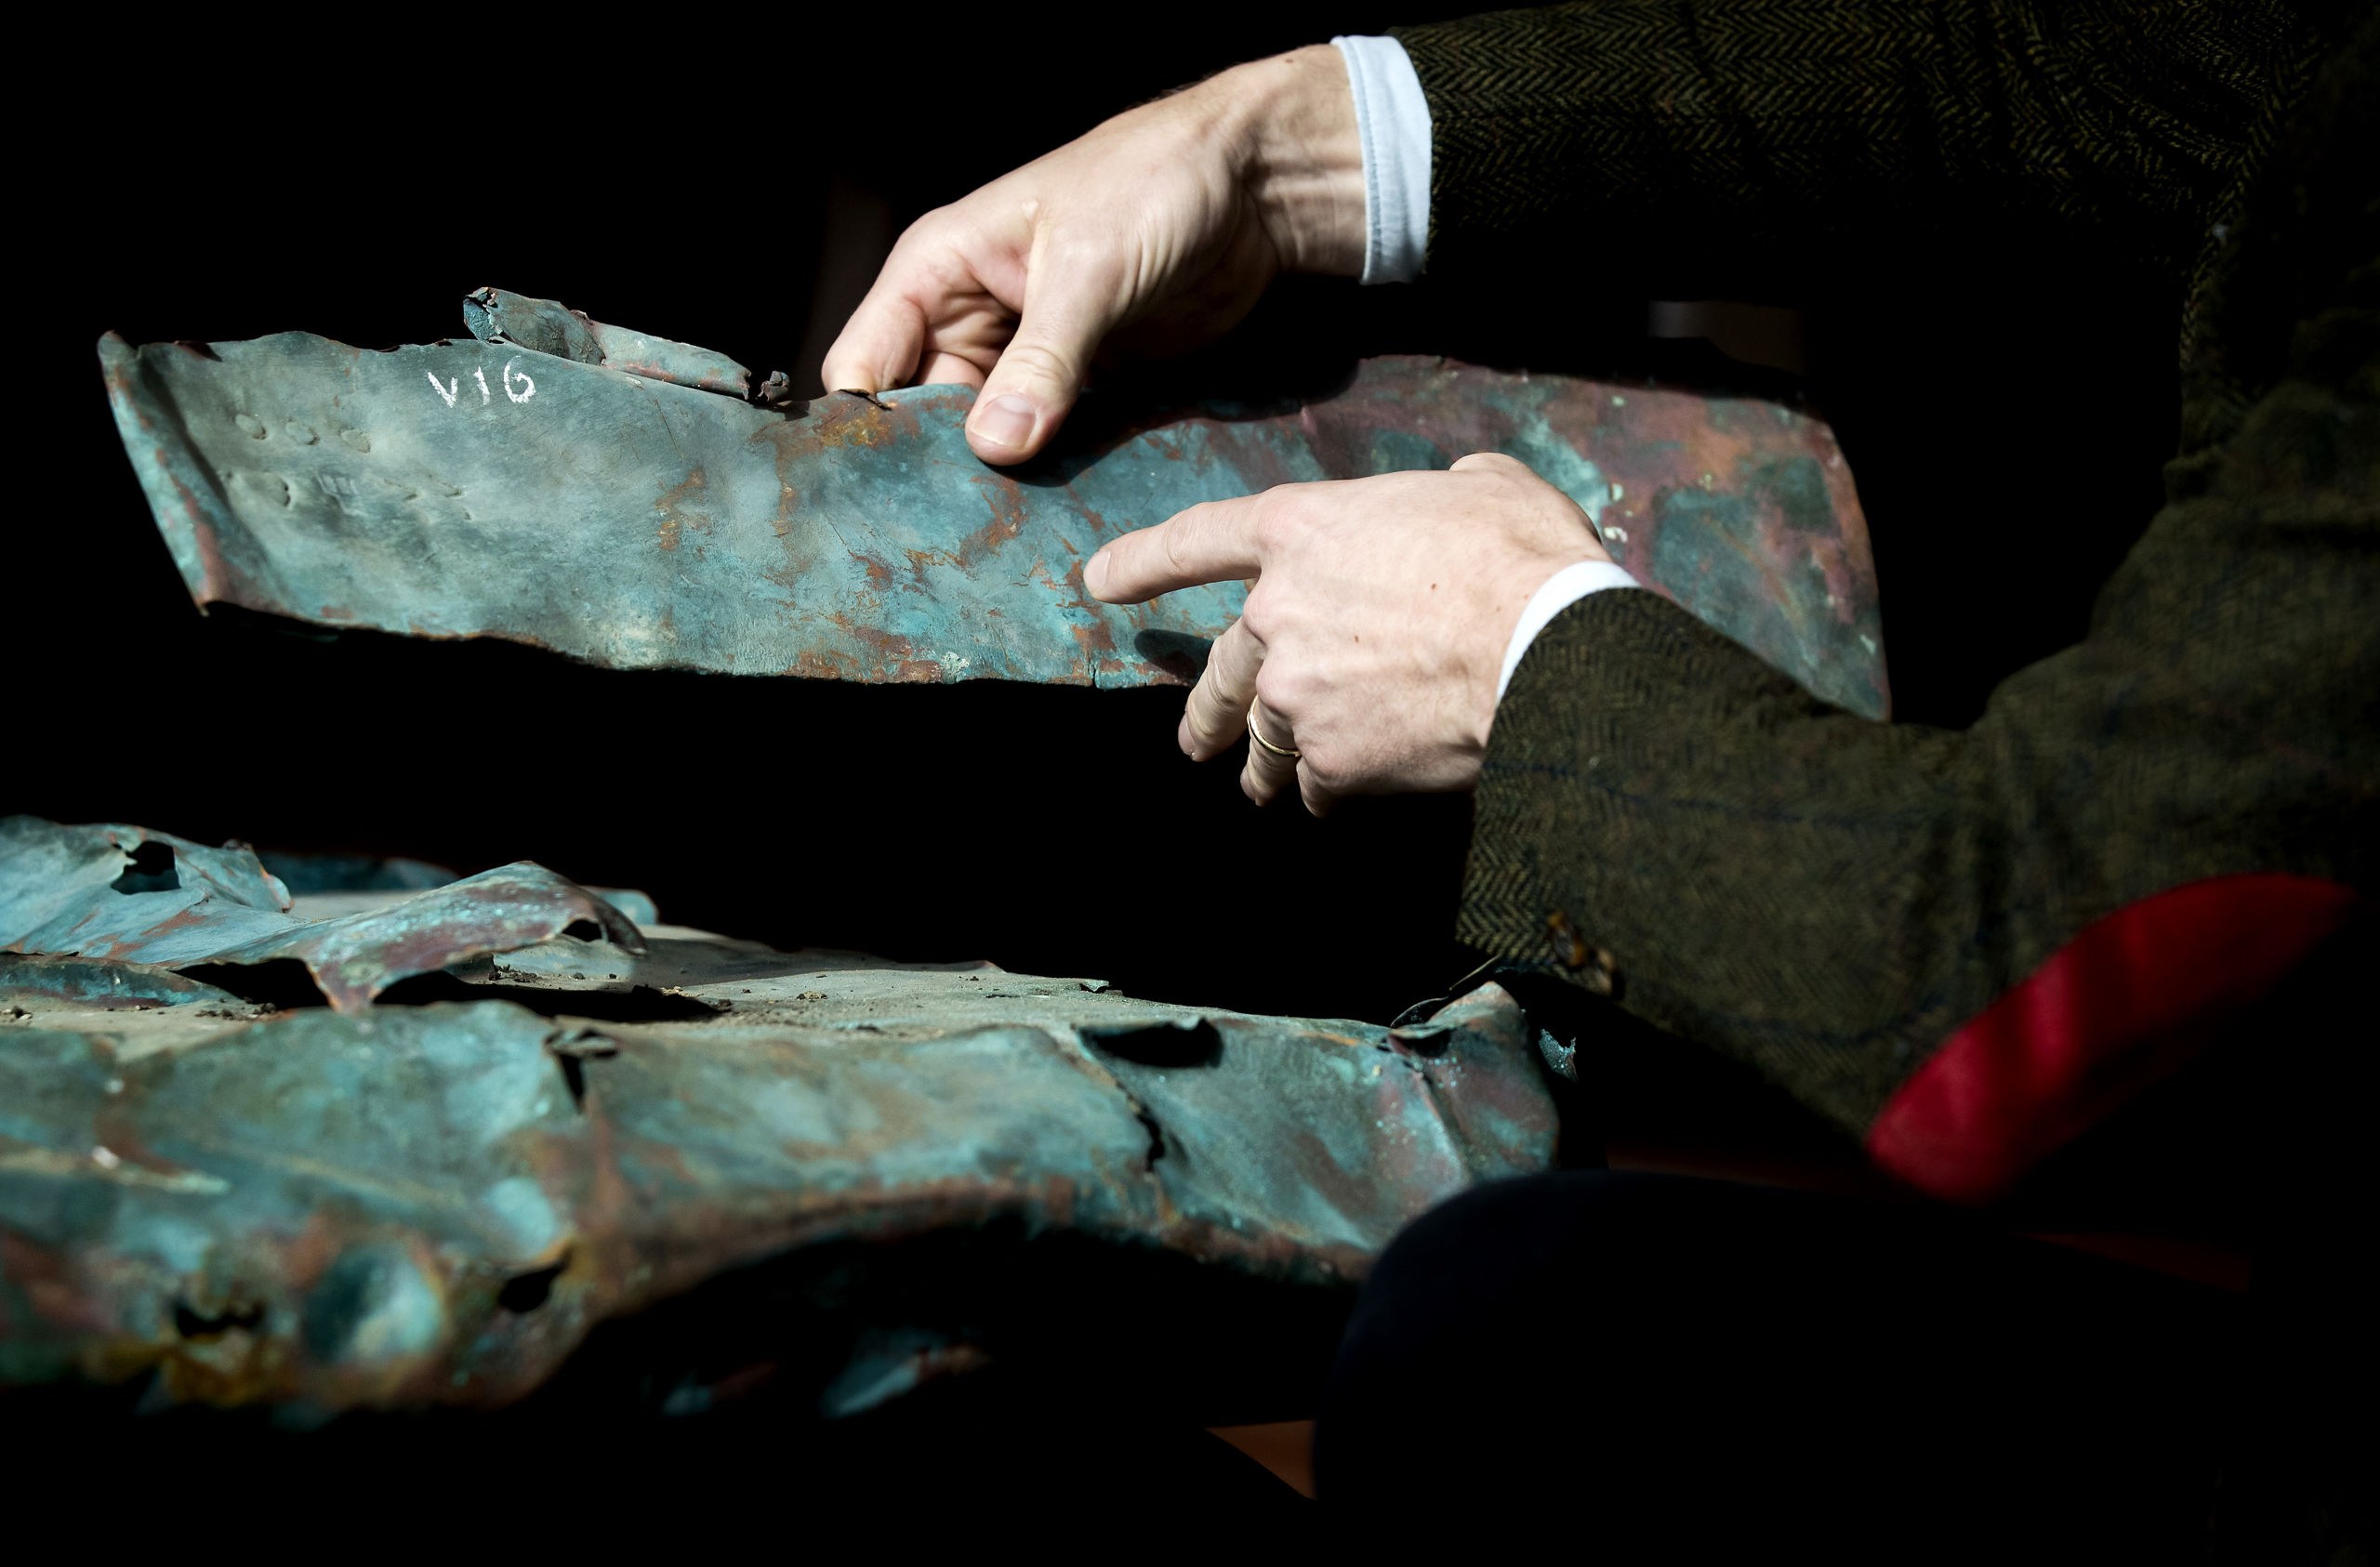 Koperplaten bij de presentatie van een archeologische vondst. Eeuwenoud koper en hout is afkomstig uit een scheepswrak uit 1536, dat werd ontdekt tijdens de berging van containers van de MSC Zoe.